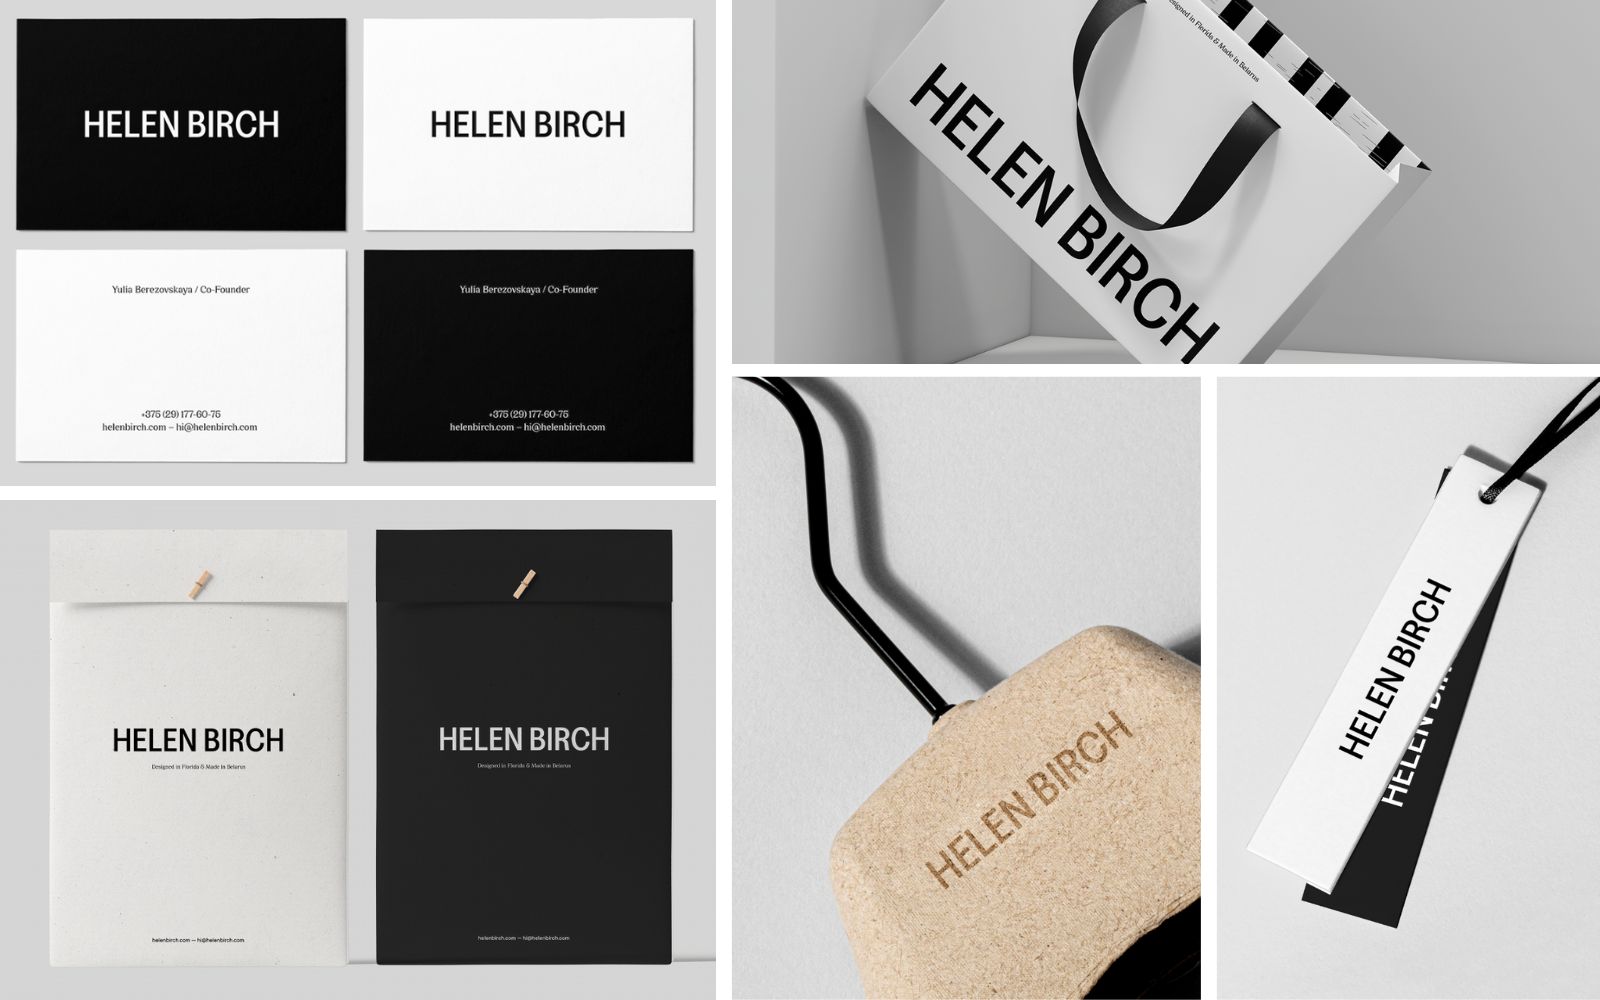 Helen Birch Fashion Brand Identity